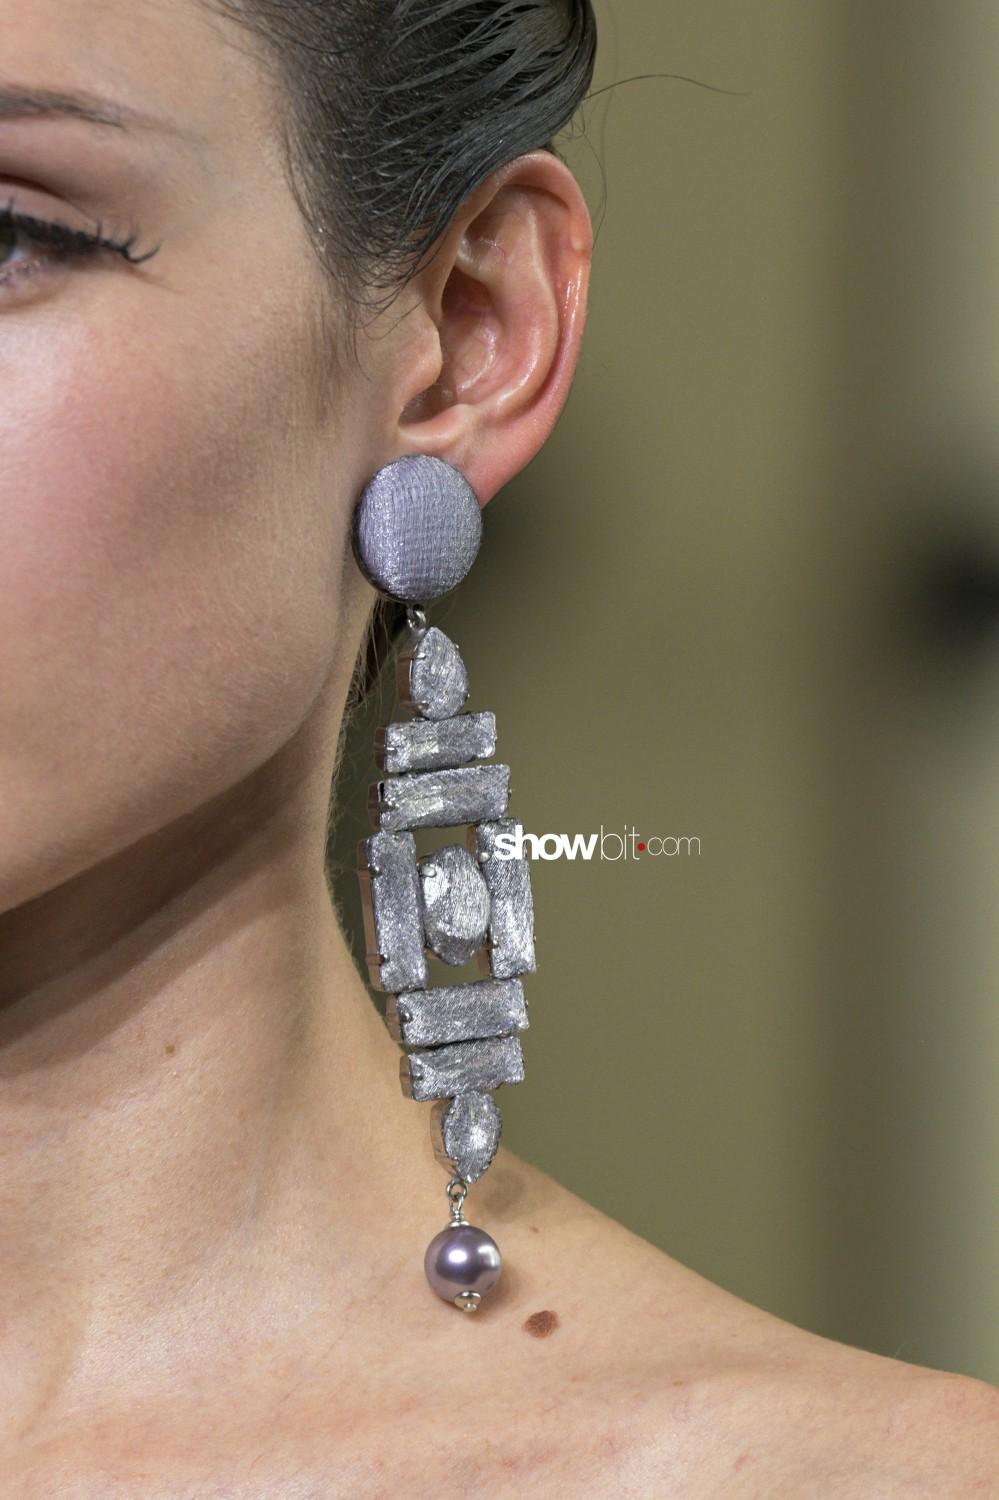 Giorgio Armani Privé close-up Haute Couture Fall Winter 2019 Paris Accessories